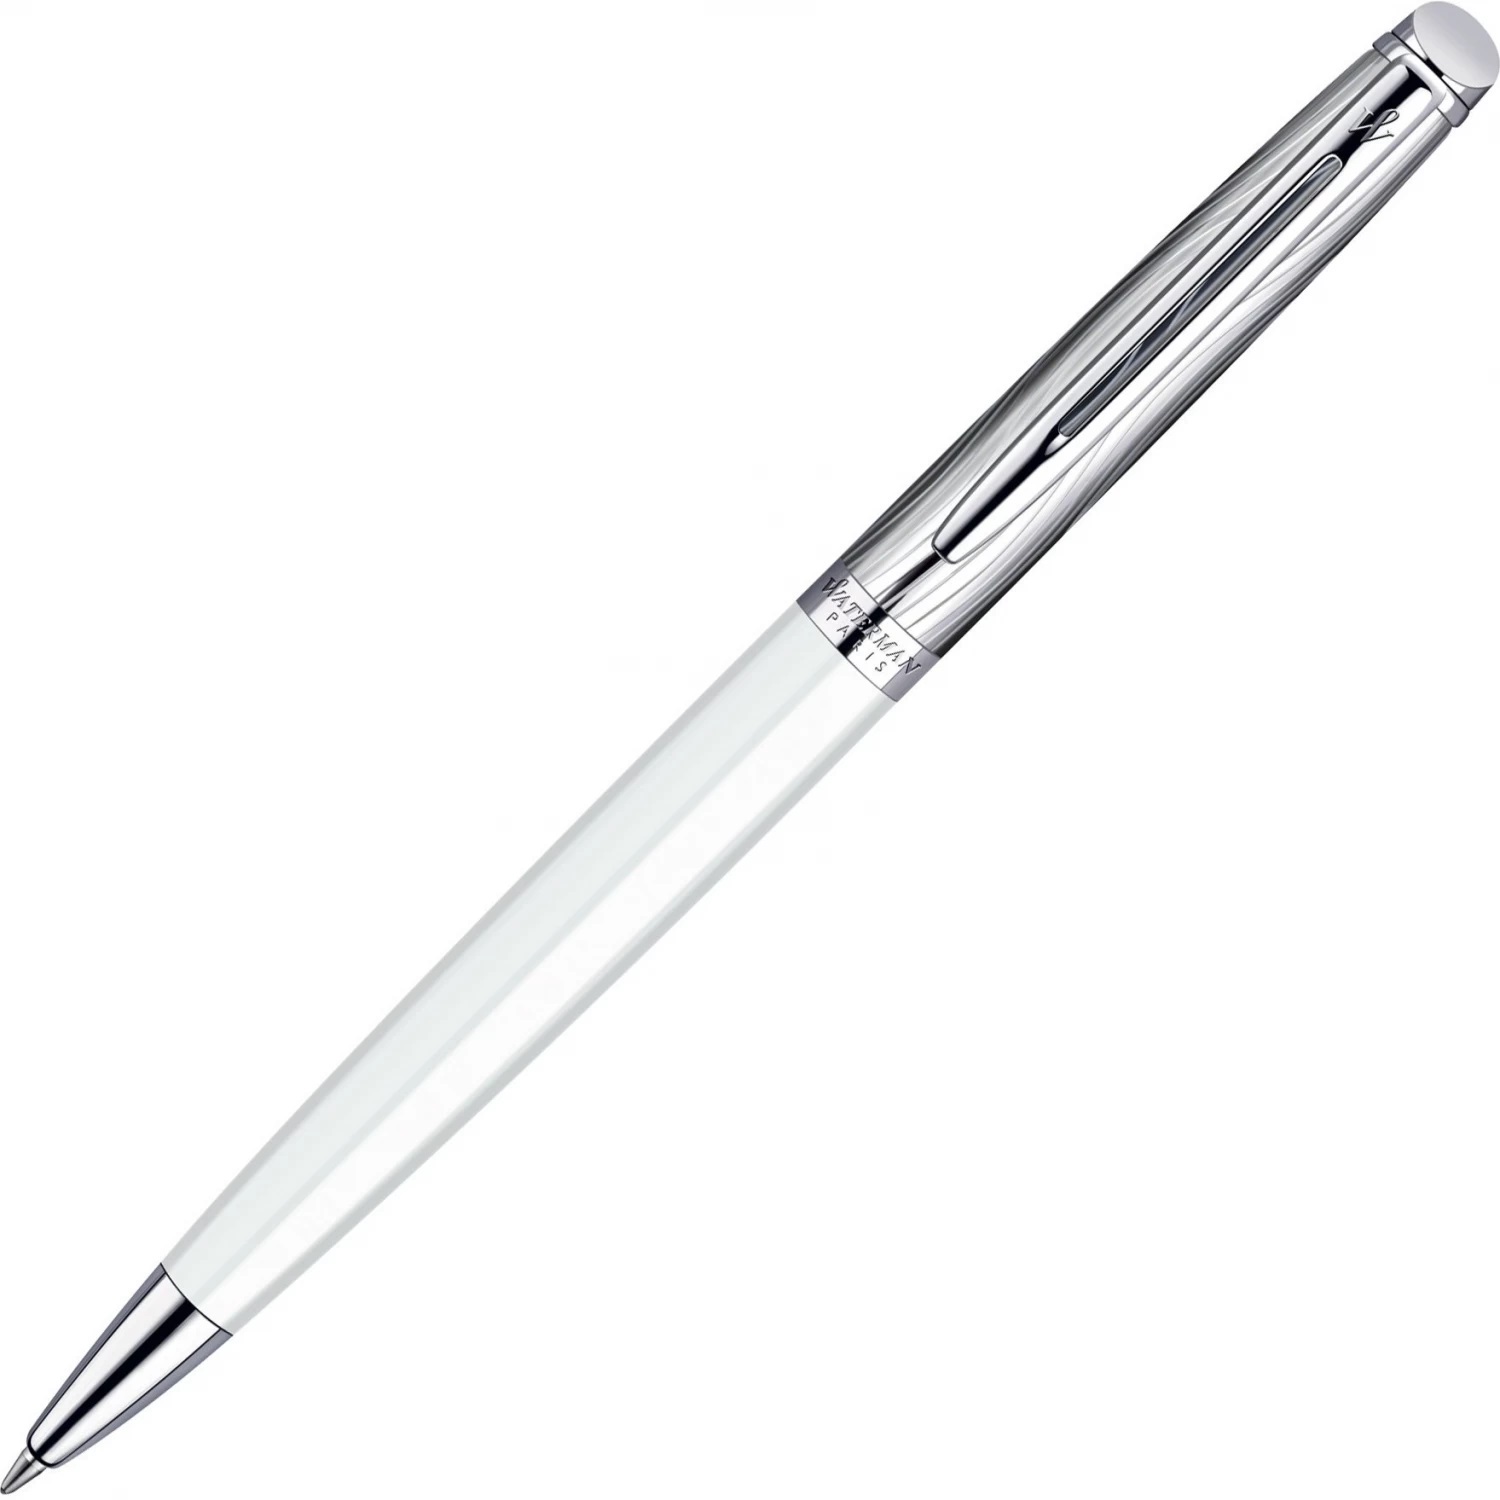 Шариковая ручка Waterman Hemisphere S0921310 (S0921310) ручка подарочная шариковая в кожзам футляре поворотная new корпус серебро с золотым